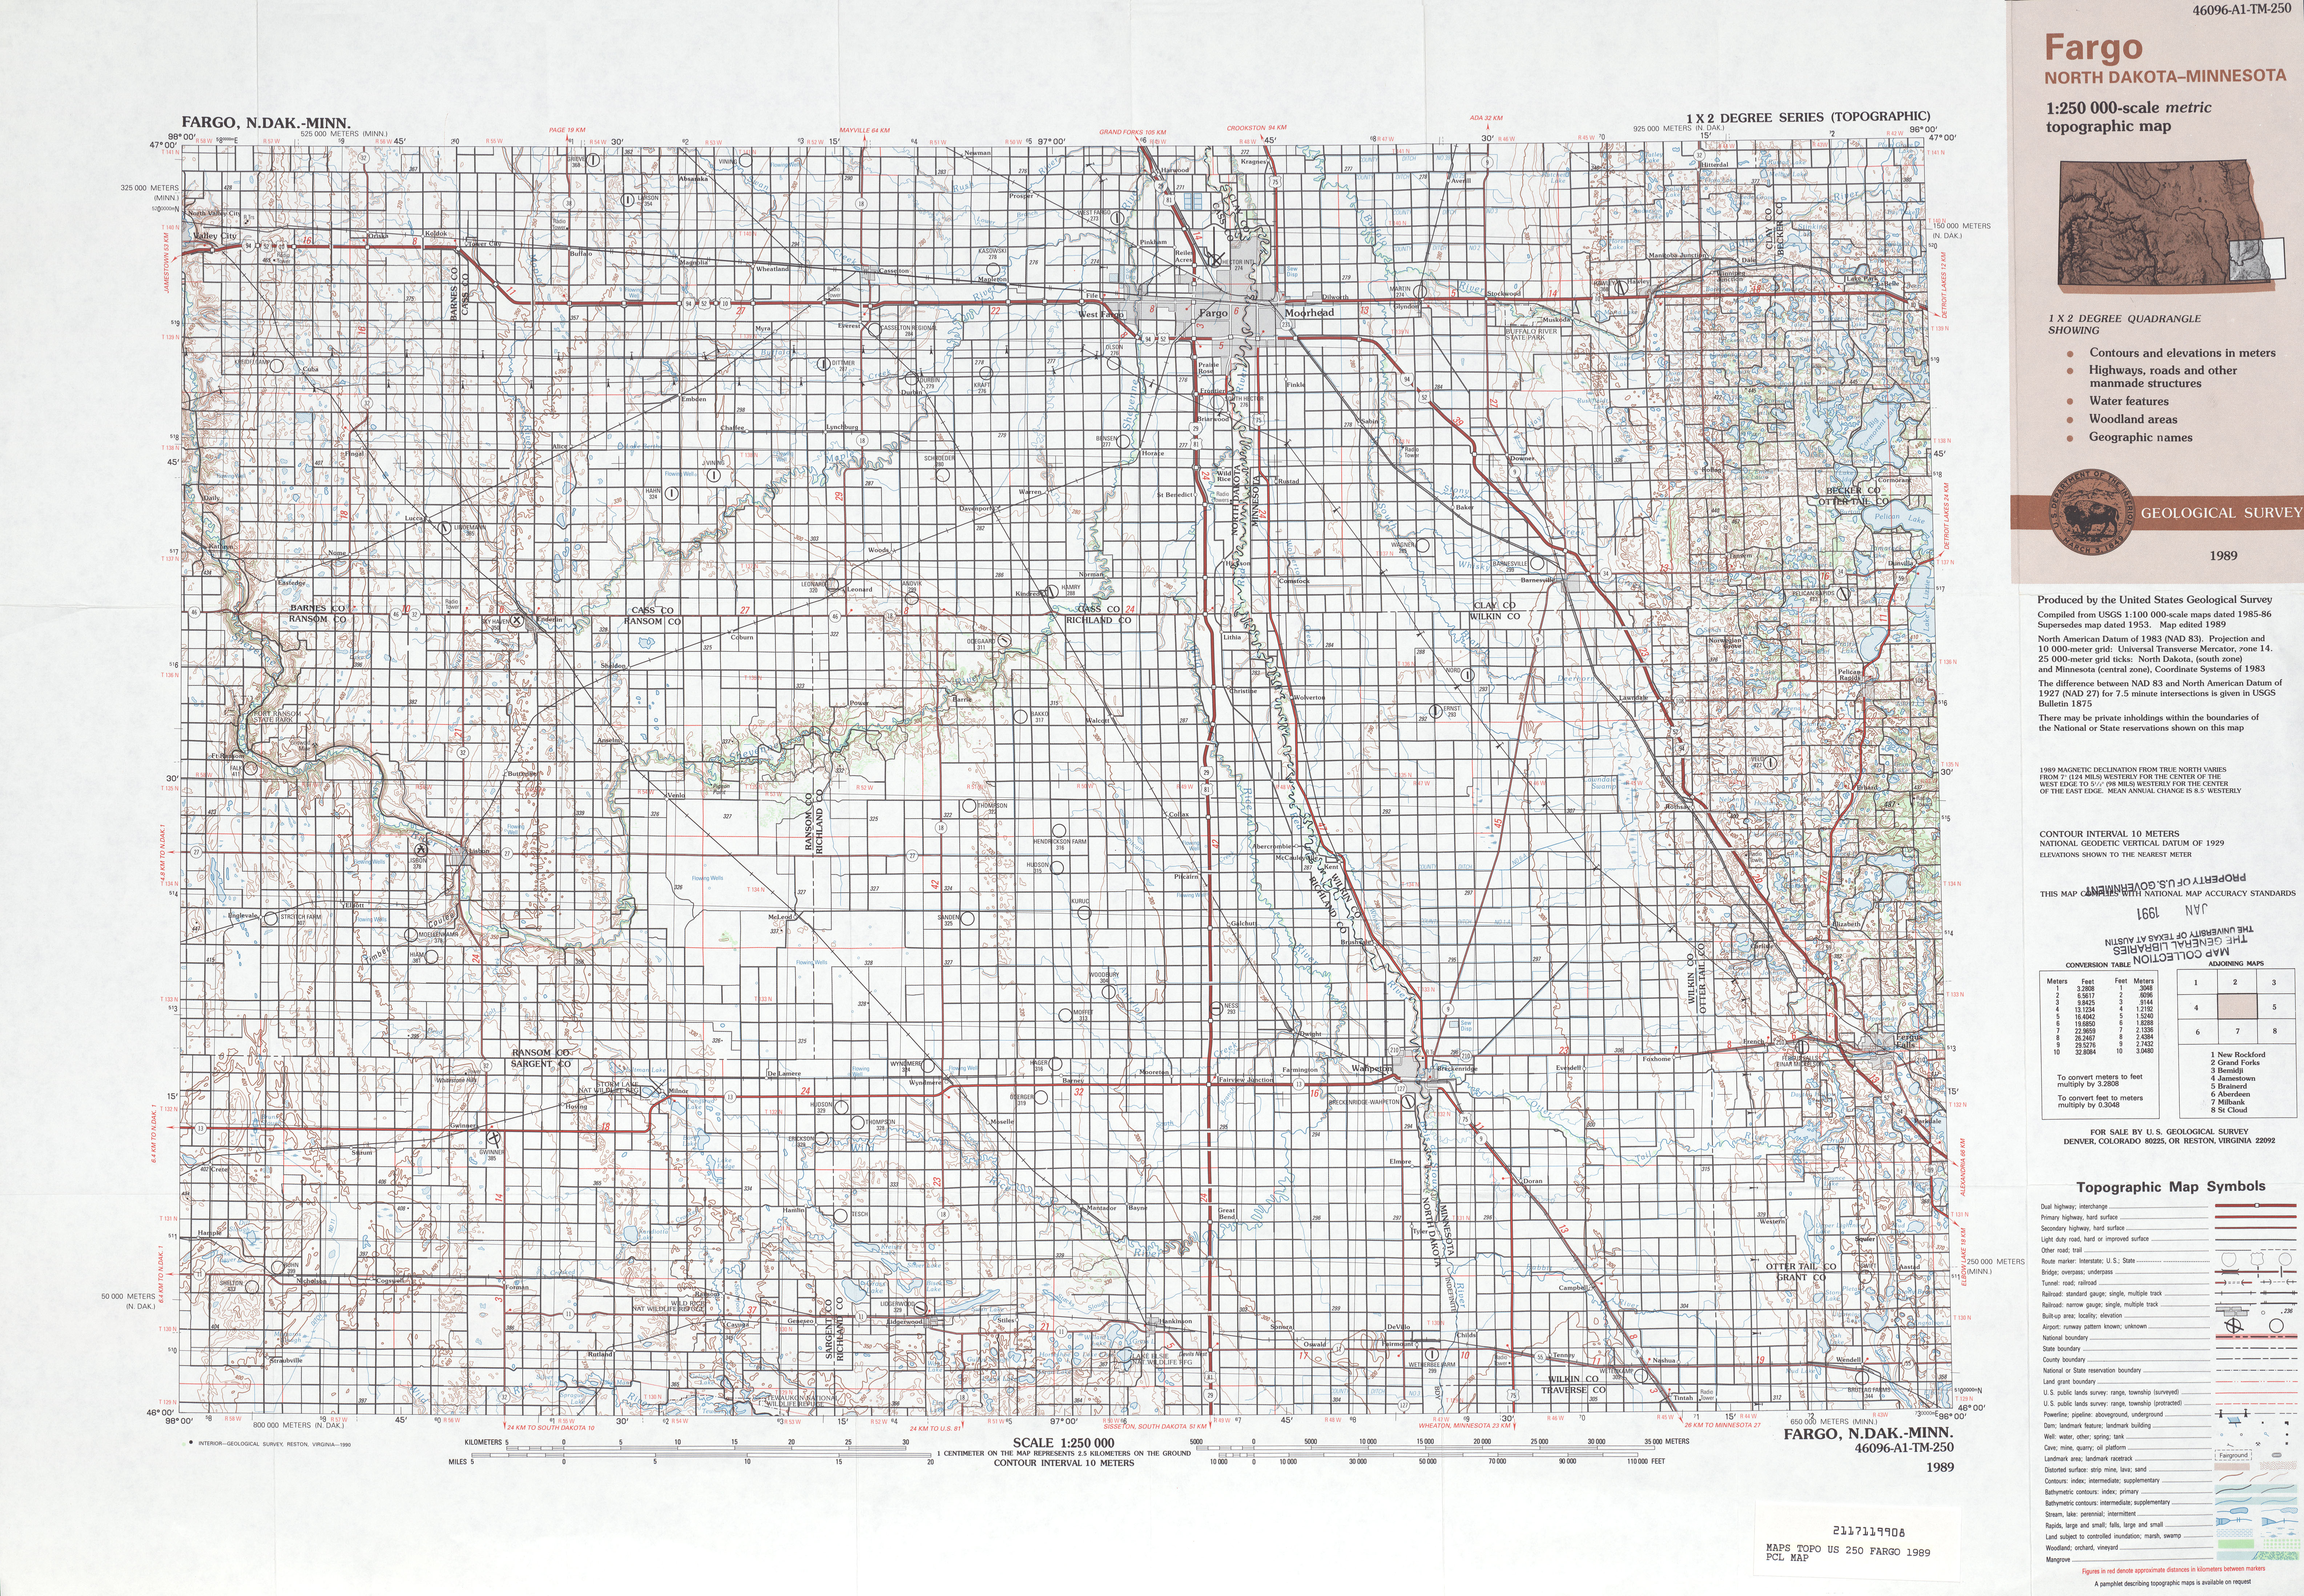 Hoja Fargo del Mapa Topográfico de los Estados Unidos 1989